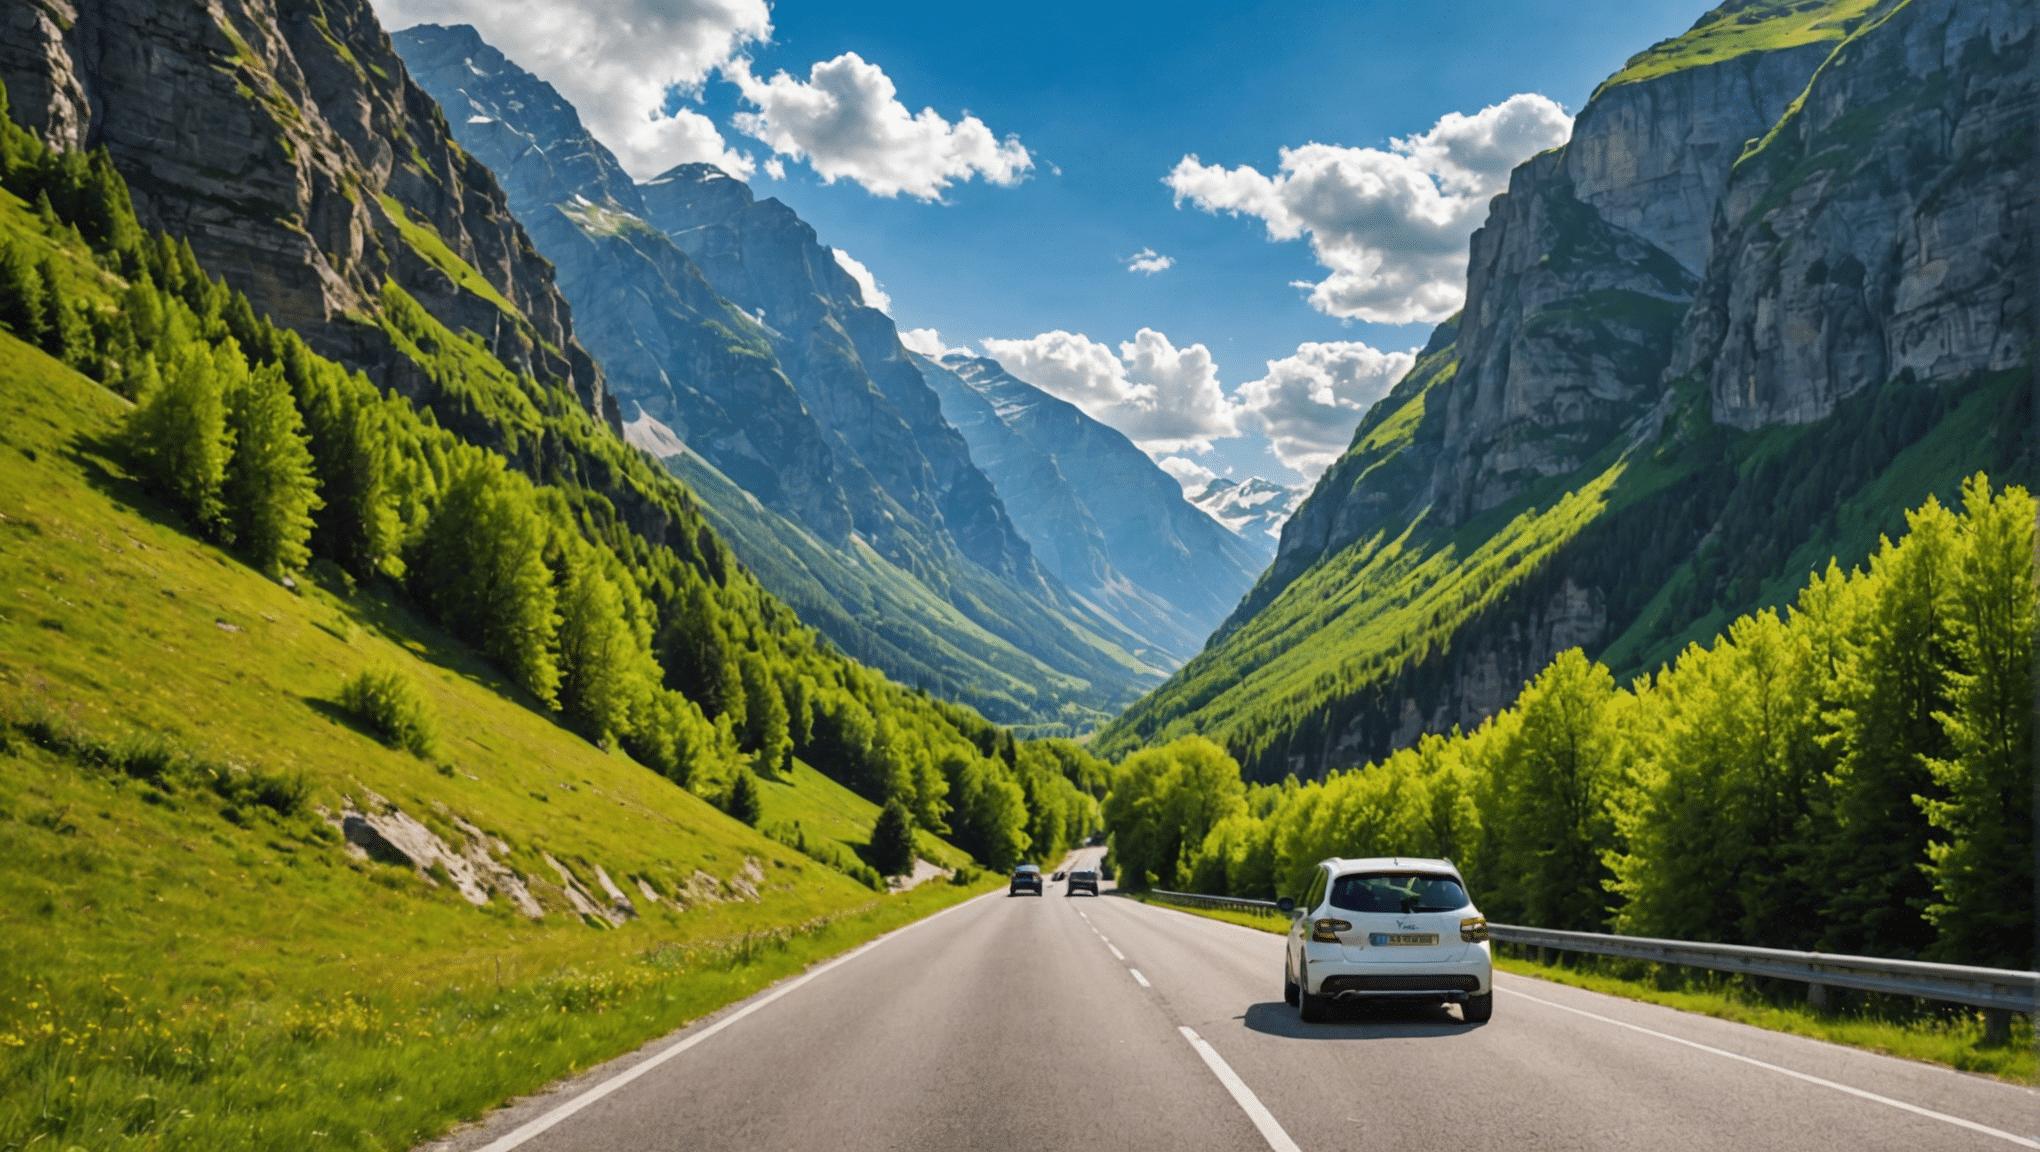 découvrez les plus beaux road trips en europe et profitez d'un été inoubliable à travers des paysages magnifiques, des villes pittoresques et des aventures inoubliables.